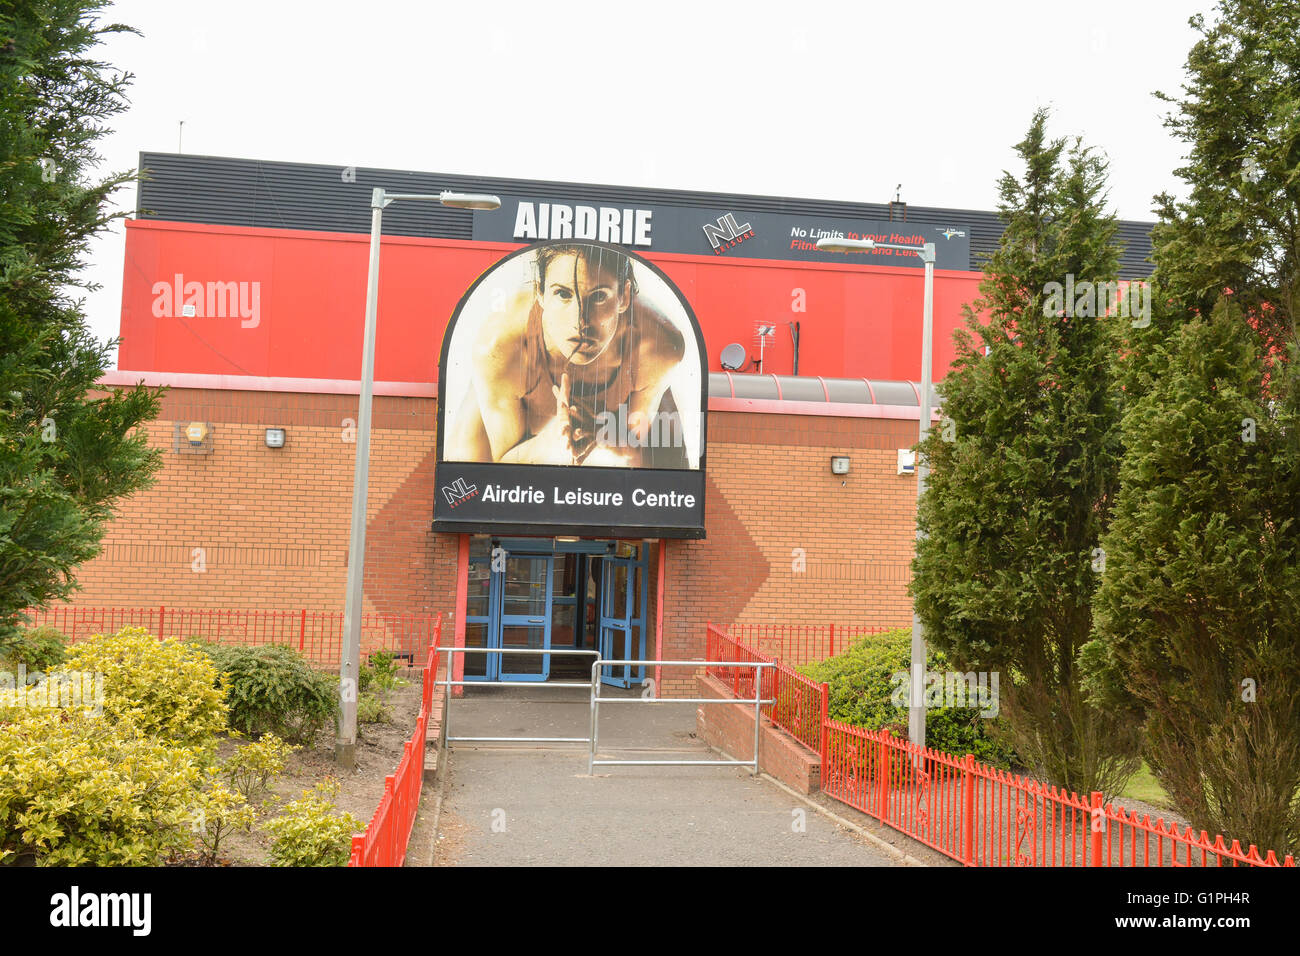 Centre de loisirs d'Airdrie, exploité par NL Loisirs (North Lanarkshire), Ecosse, Royaume-Uni Banque D'Images